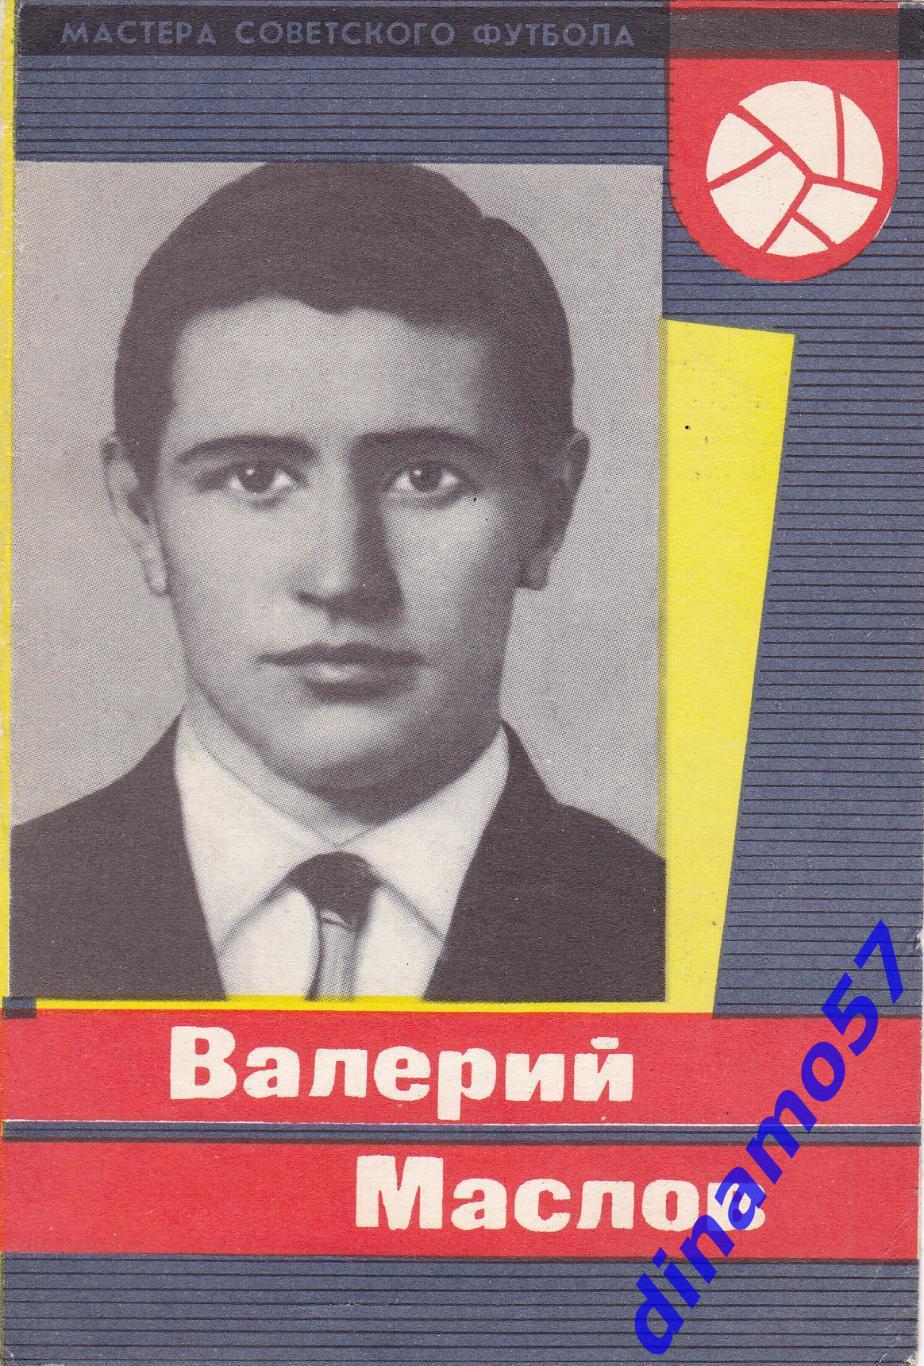 Валерий Маслов - Динамо Москва 1965 г серия - Мастера Советского футбола